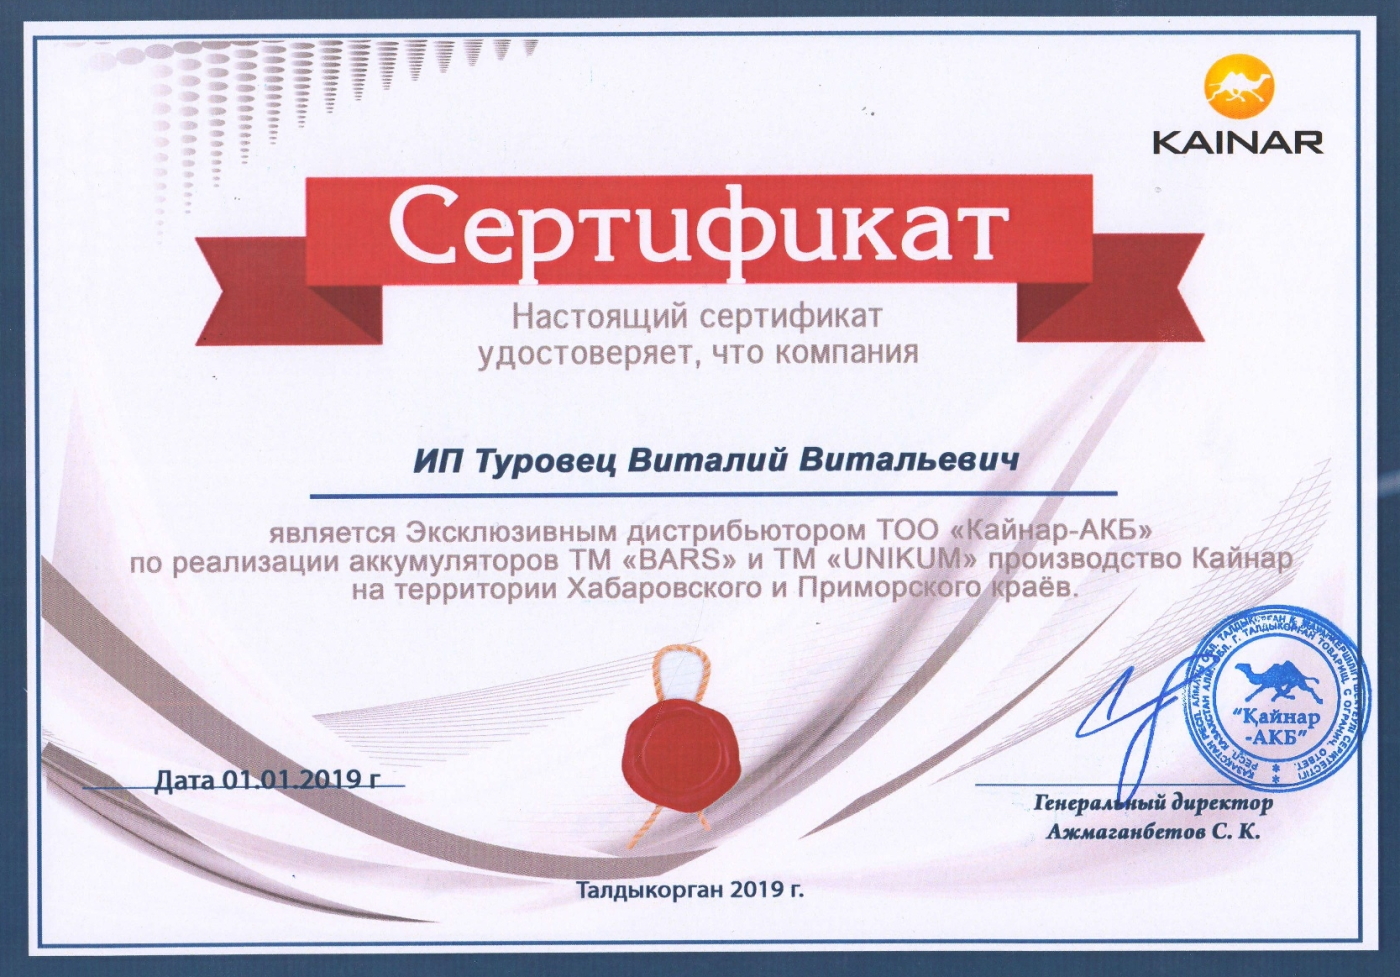 Сертификат дистрибьютора Кайнар-АКБ